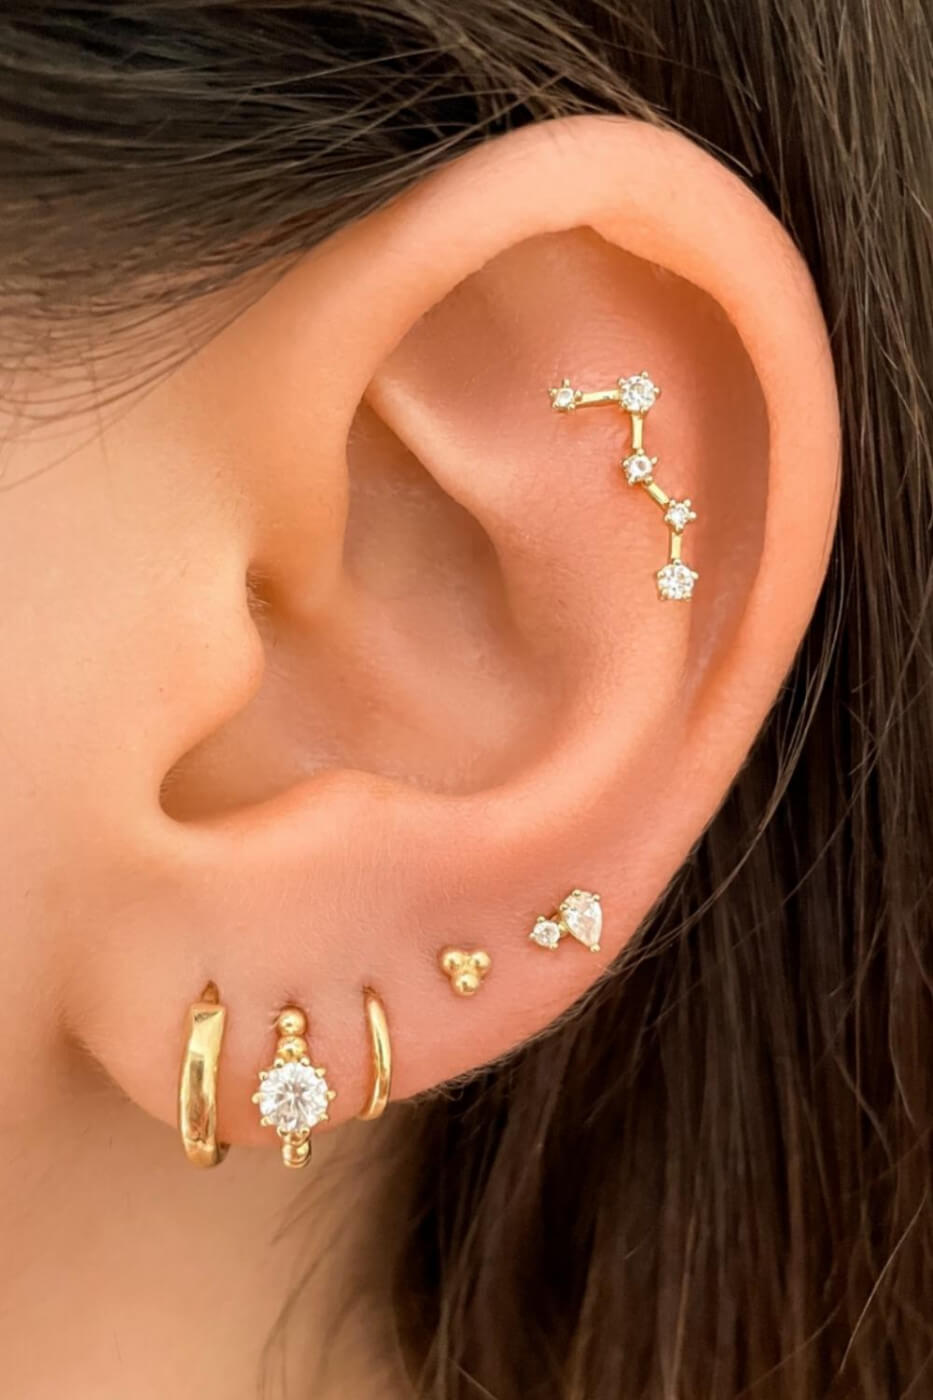 Cute Ear Piercings